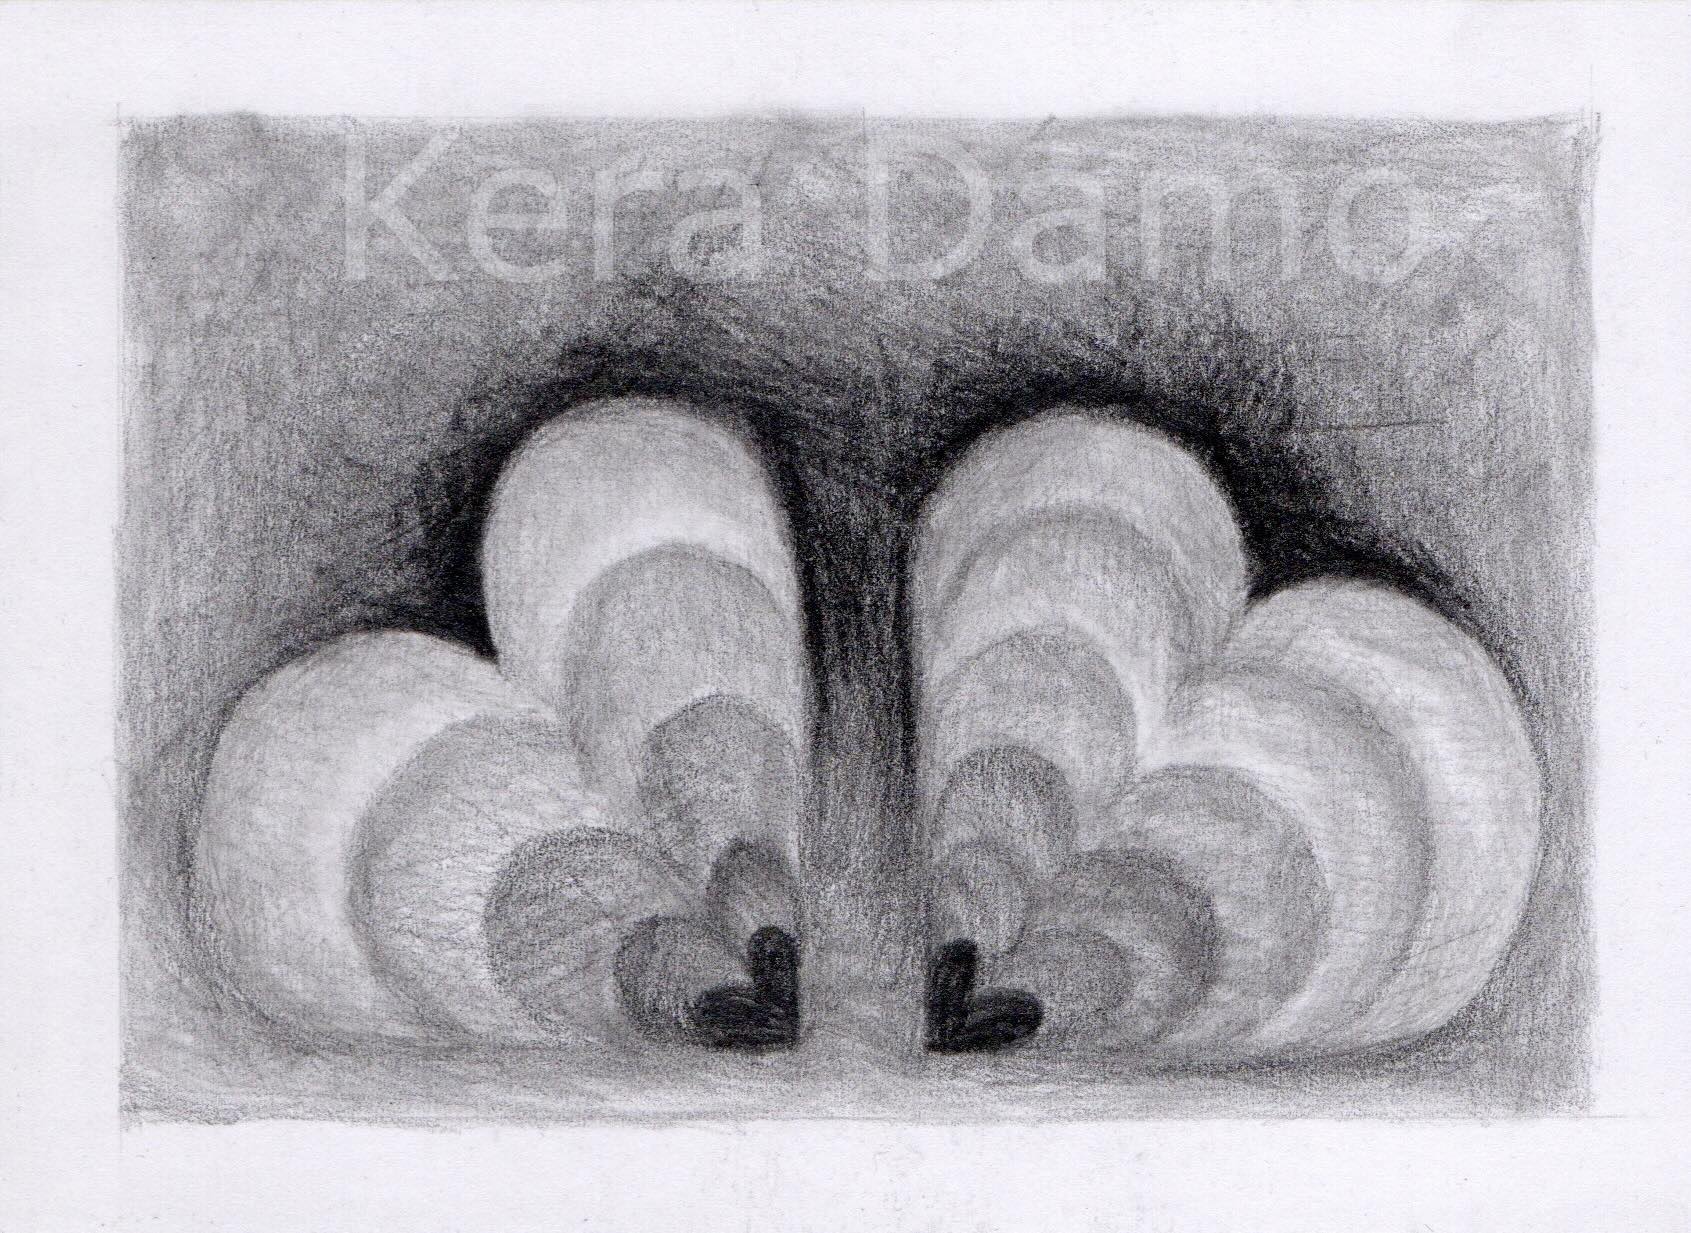 A black and white graphite pencil drawing, made by visual artist Kera Damo from the Hague / Een zwart wit potloodtekening van beeldend kunstenaar Kera Damo uit Den Haag